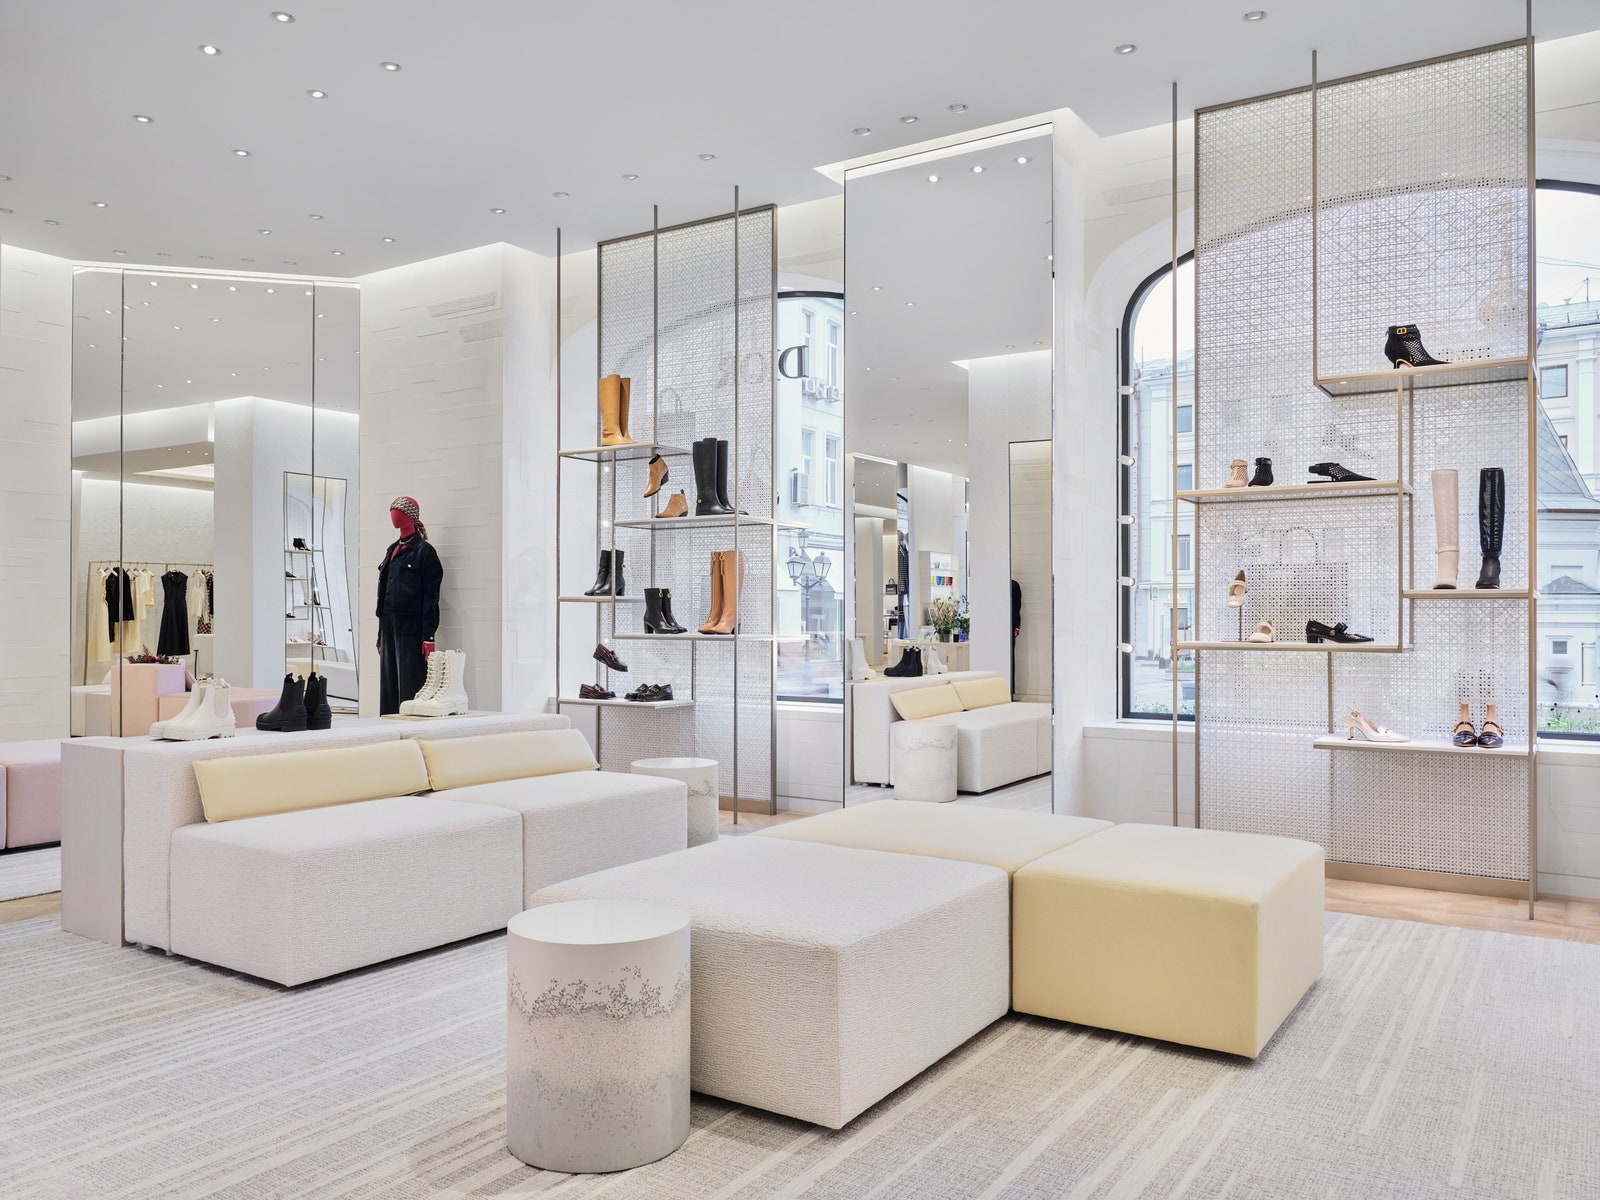 Обновленный бутик Dior в Столешниковом переулке